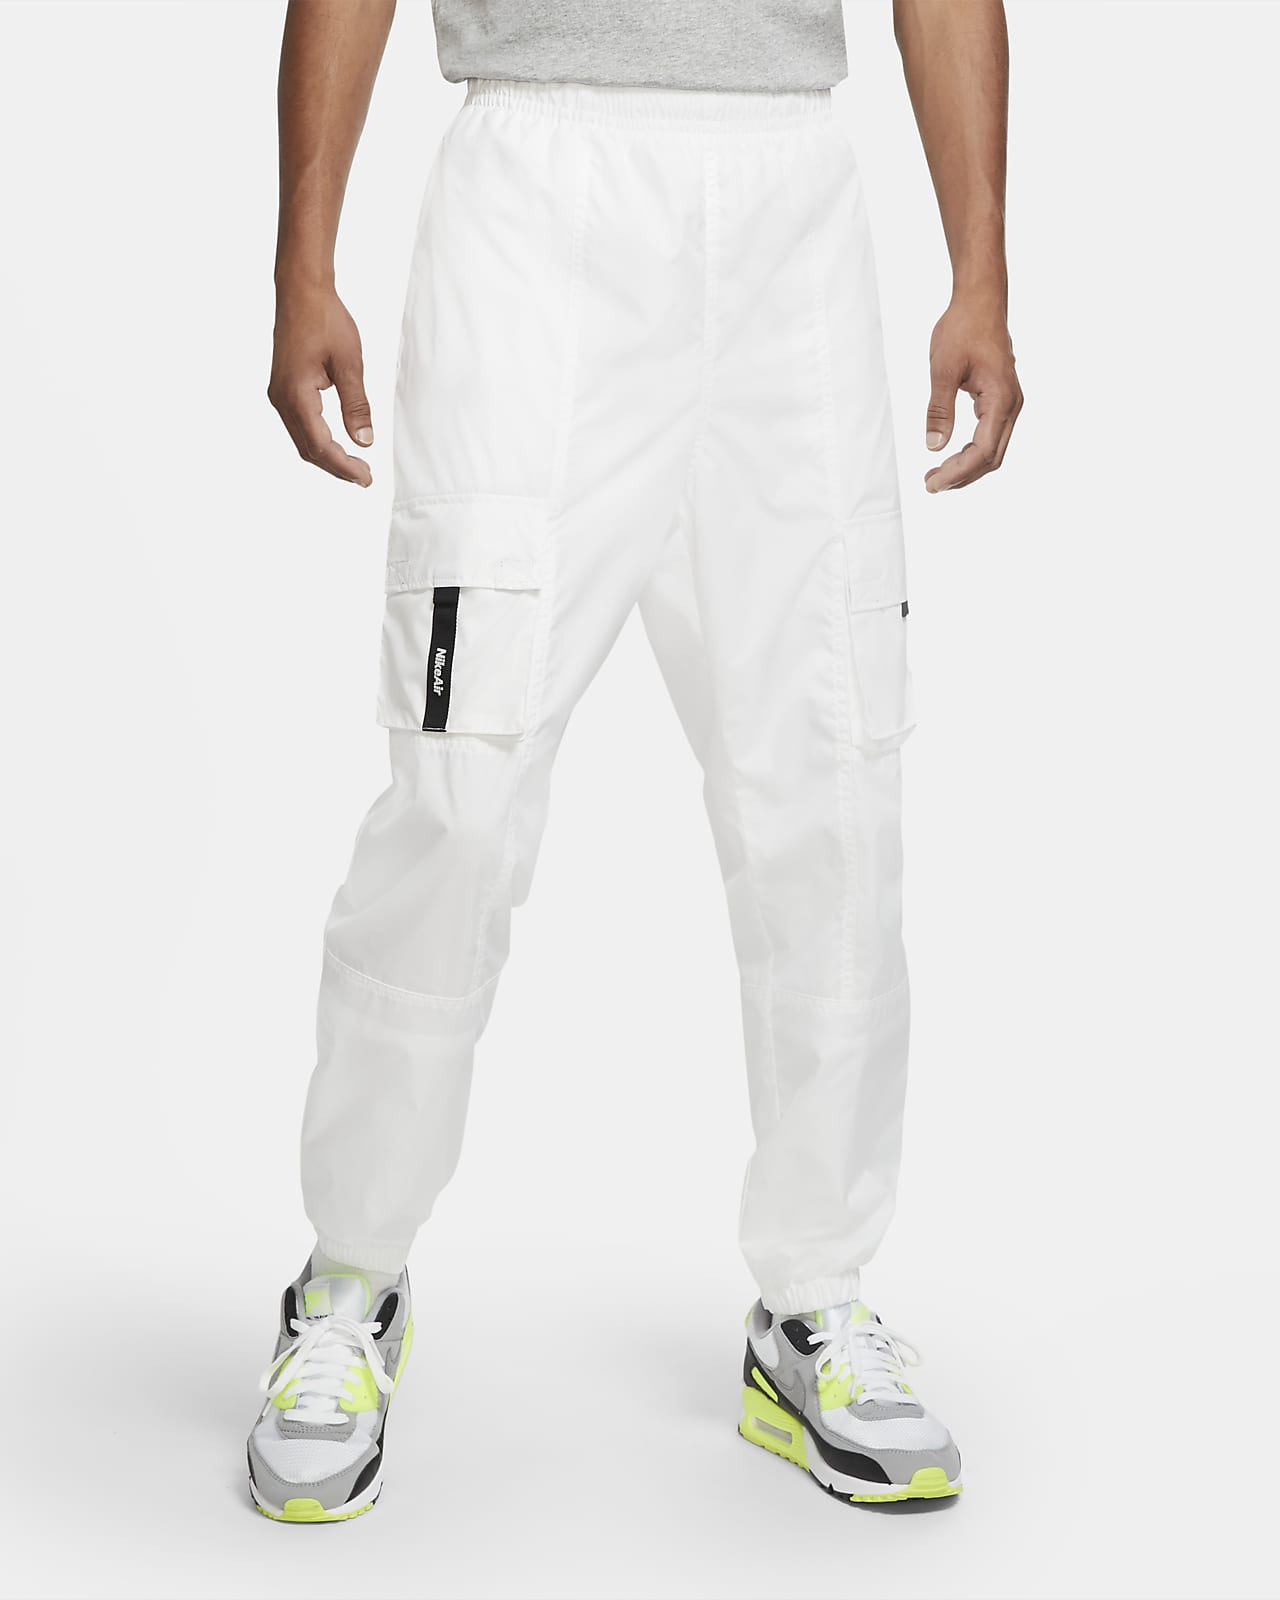 Download Nike Air Men's Woven Pants. Nike.com